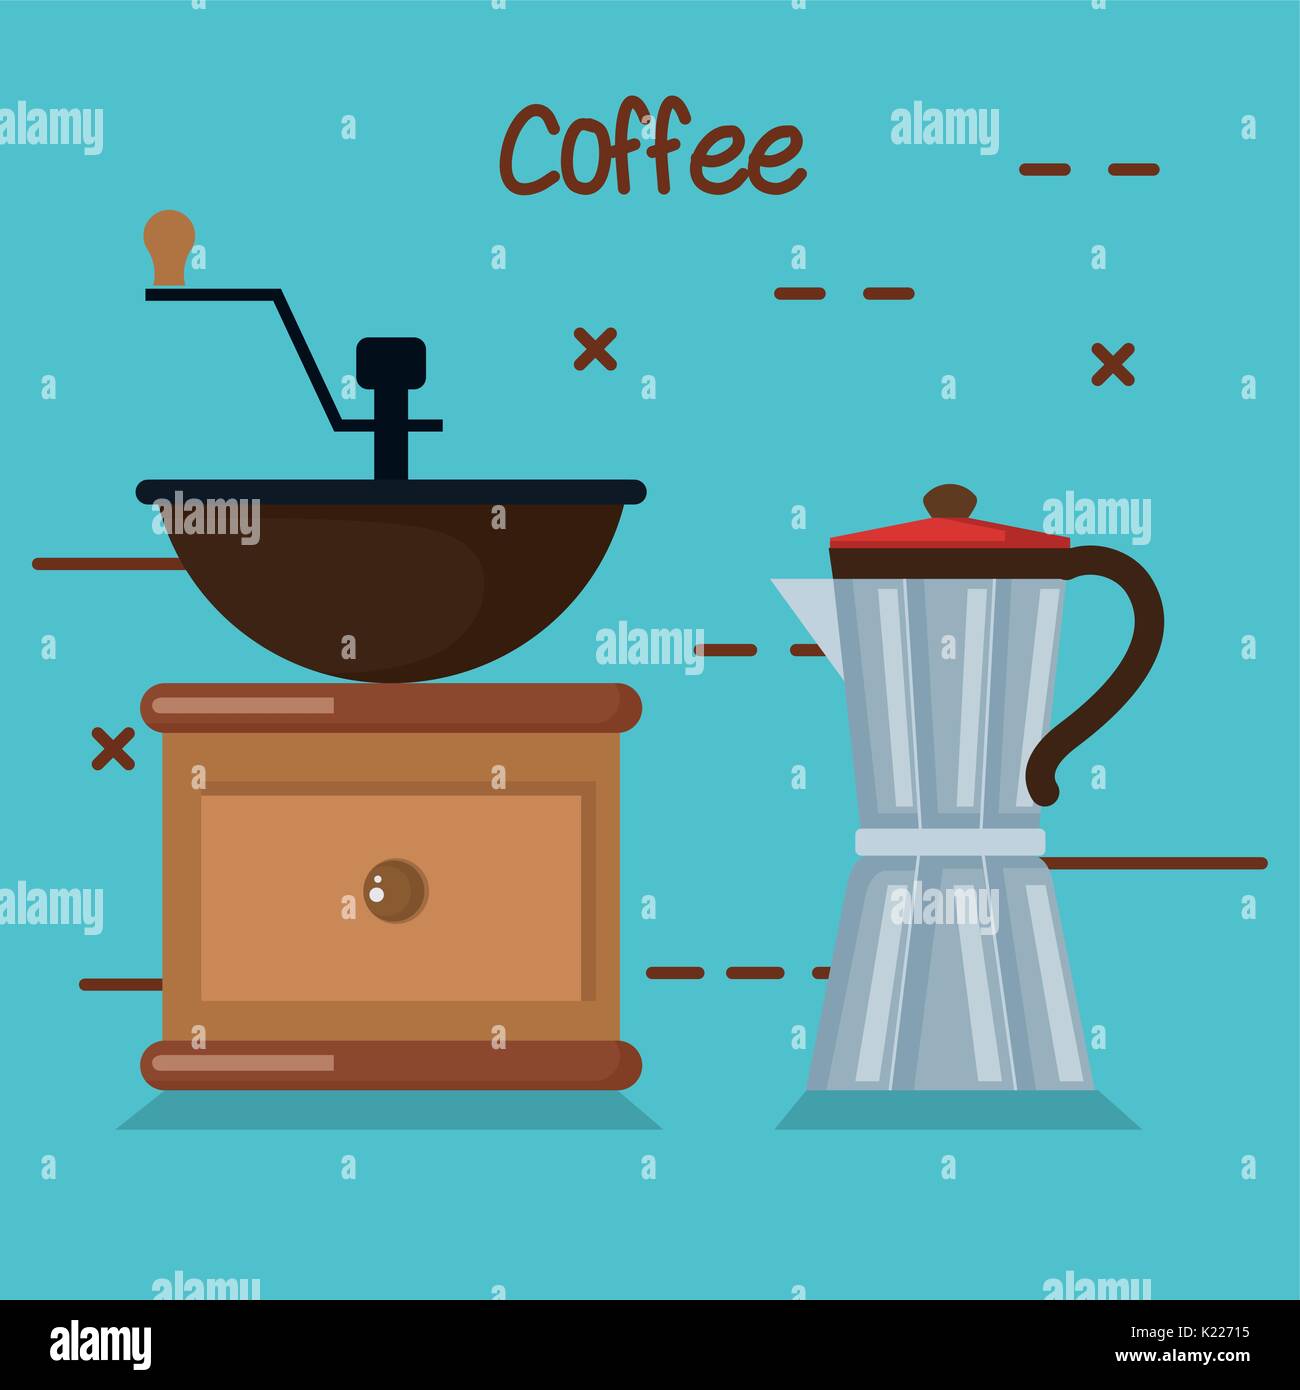 Với máy xay cà phê thủ công, bạn có thể tạo ra những tách cà phê đậm đà và ngon miệng. Tìm hiểu thêm về những sản phẩm chất lượng cao và kiểu dáng độc đáo bằng cách xem hình ảnh.